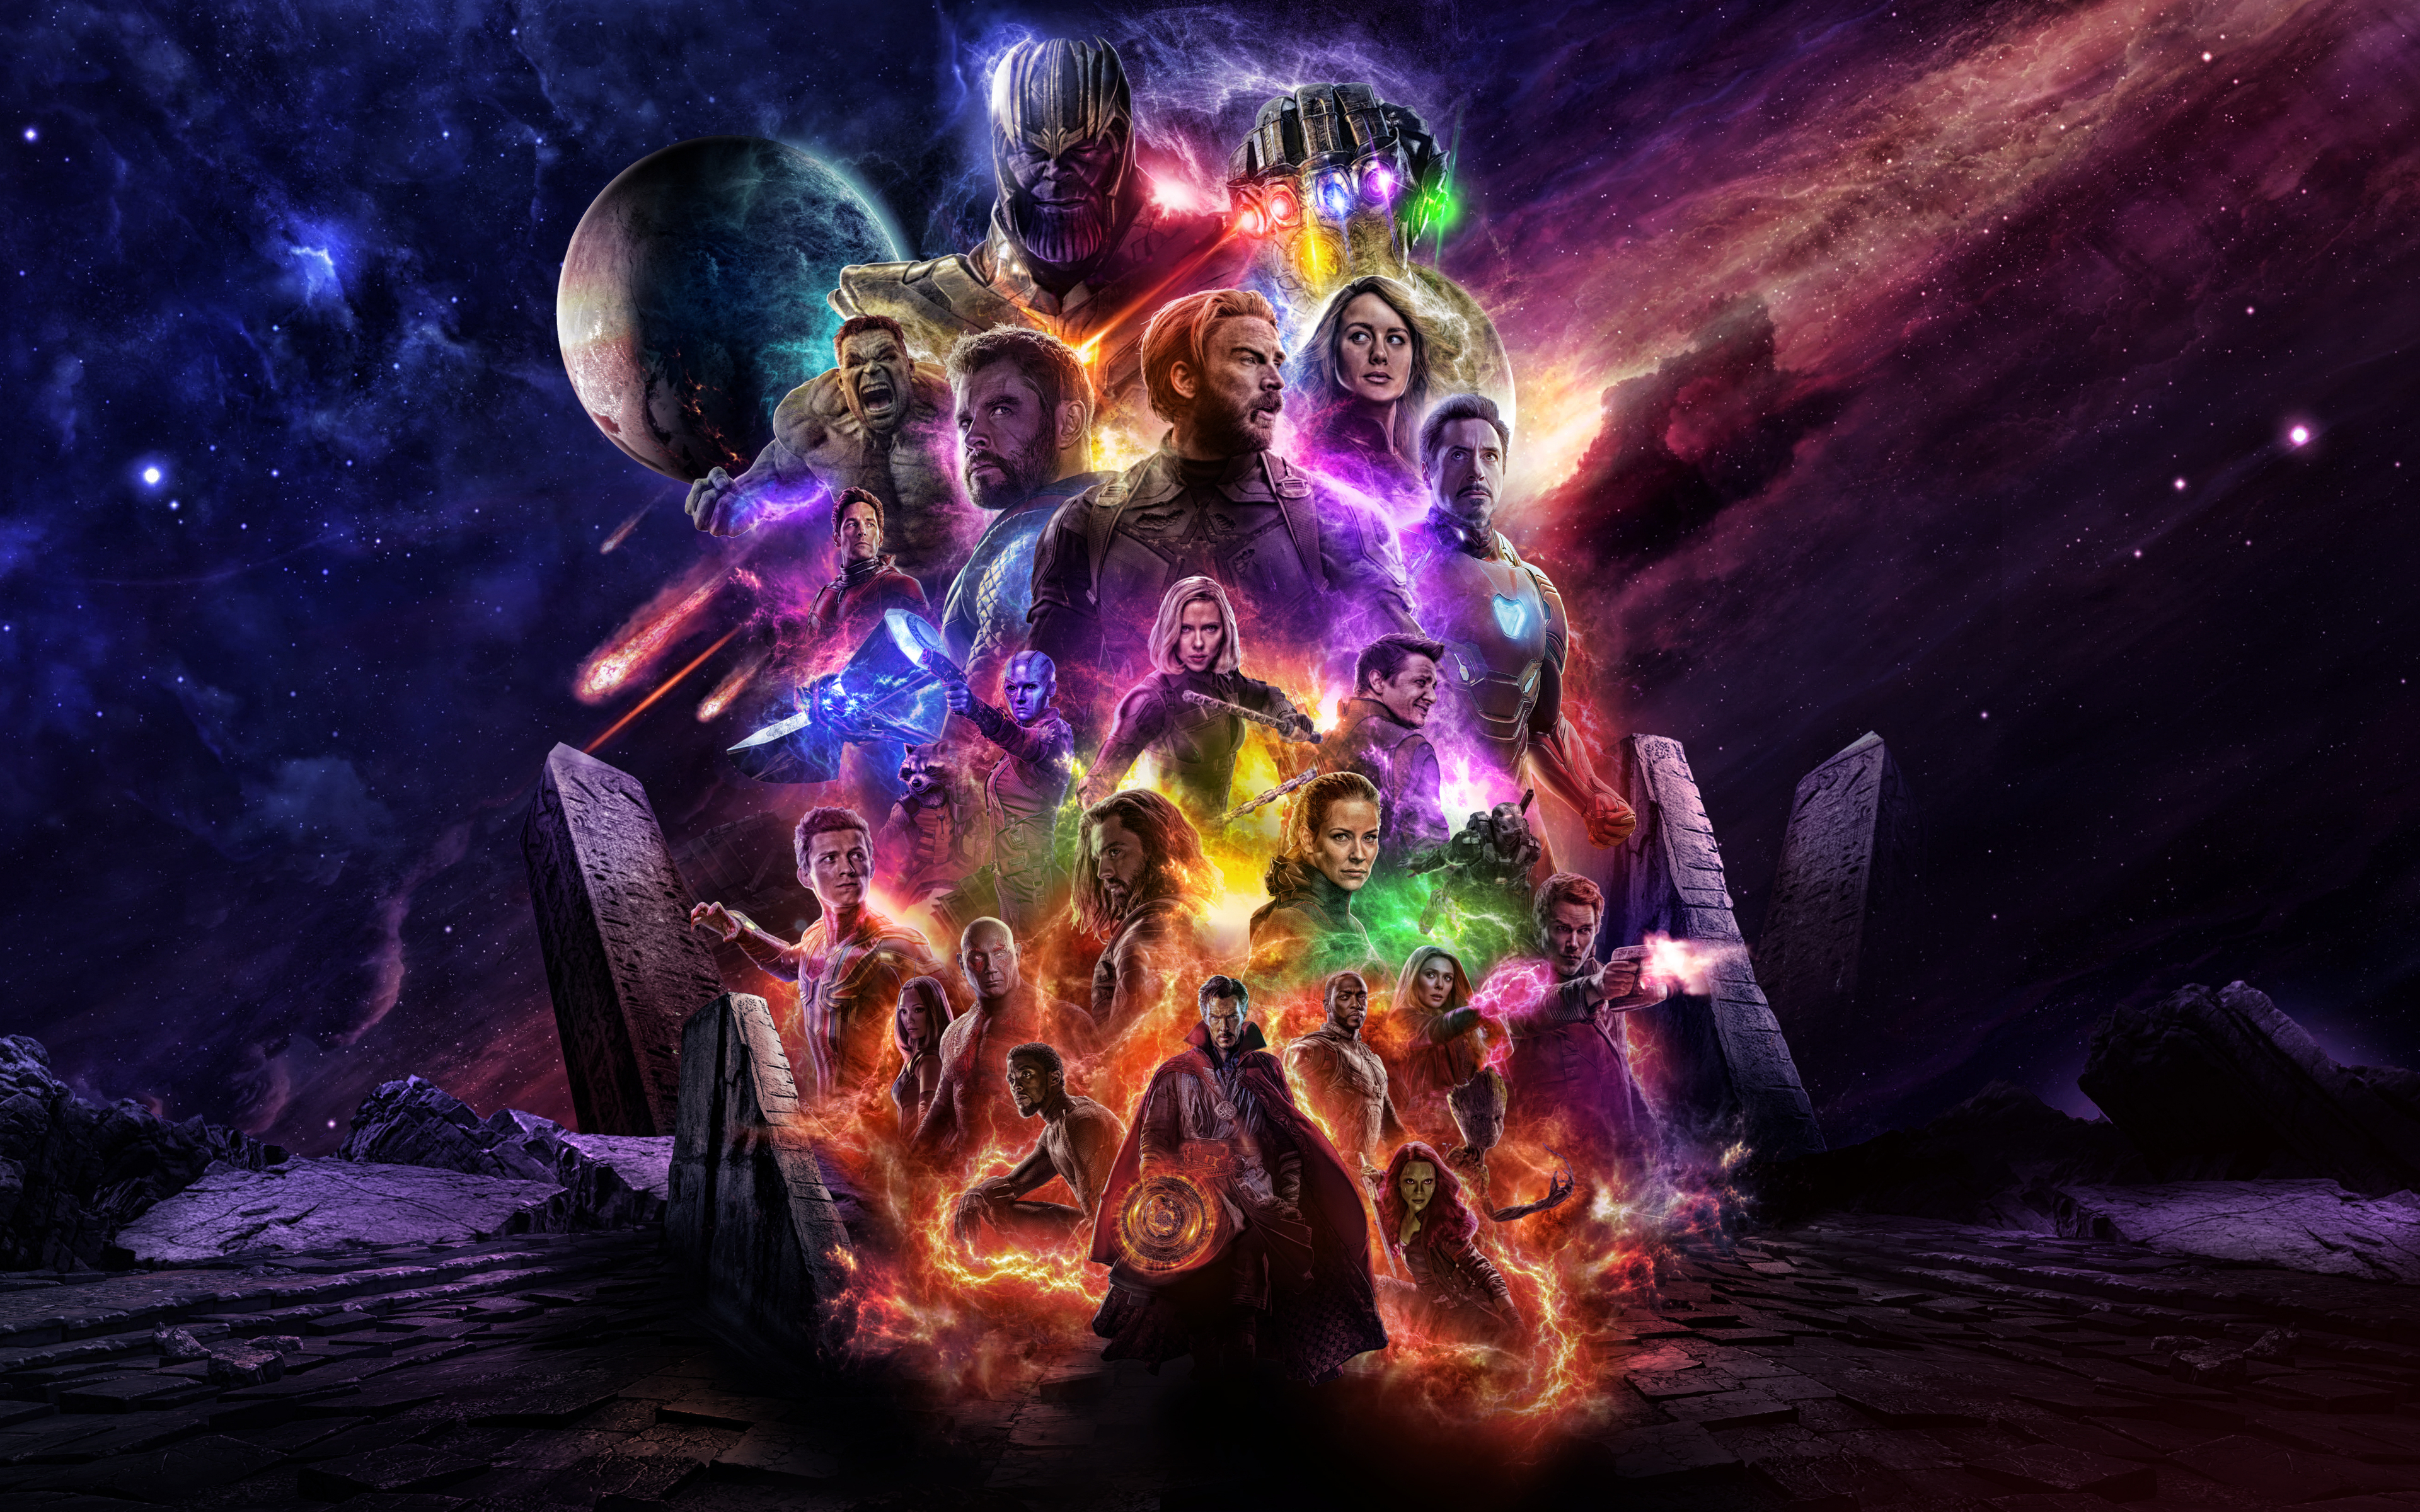 Avengers 4 Endgame 2019 Movie Keyart, HD 4K Wallpaper